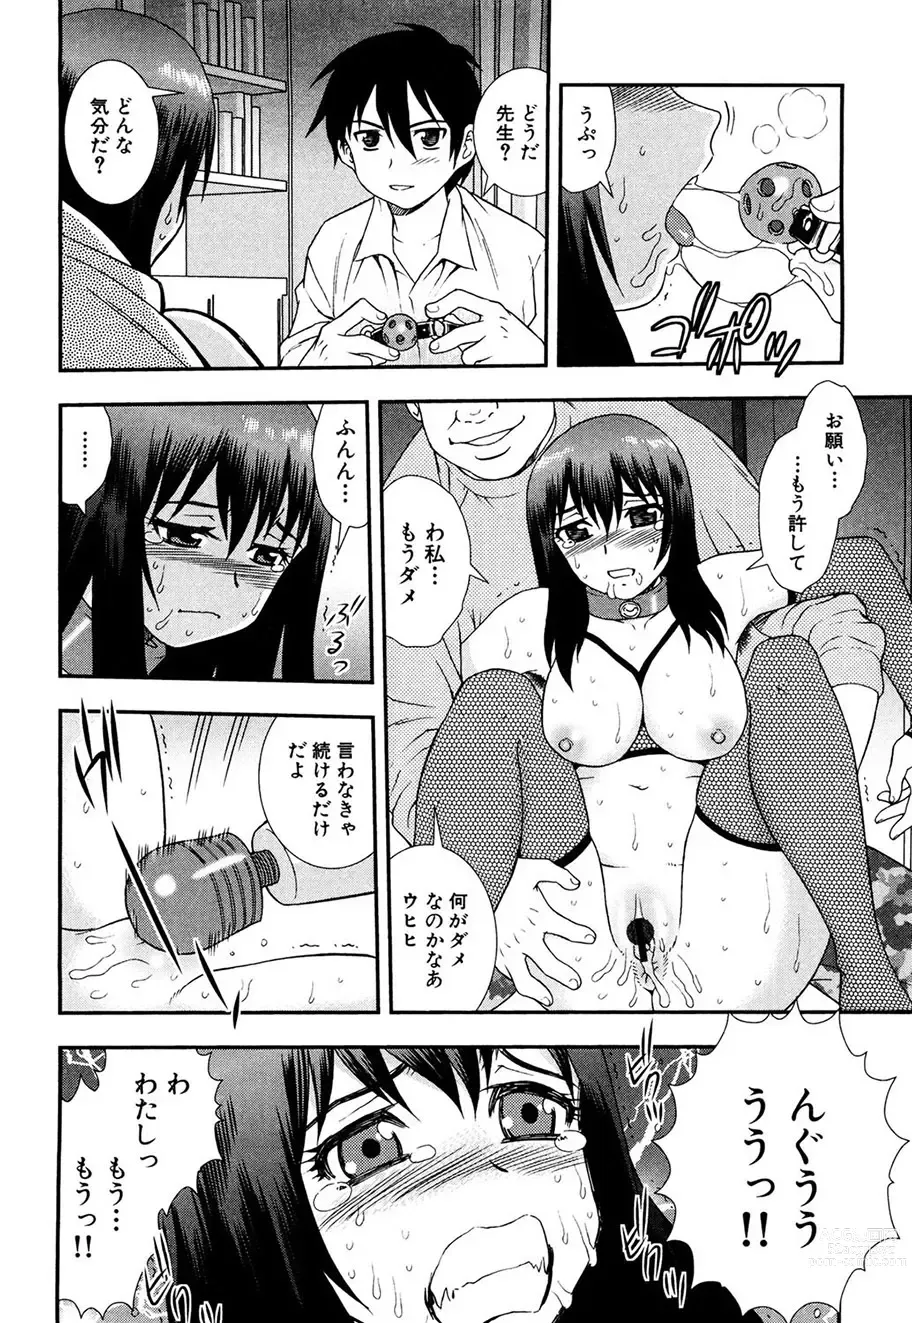 Page 151 of manga Onna Kyoushi Chijoku no Kusari -NIGHTMARE-